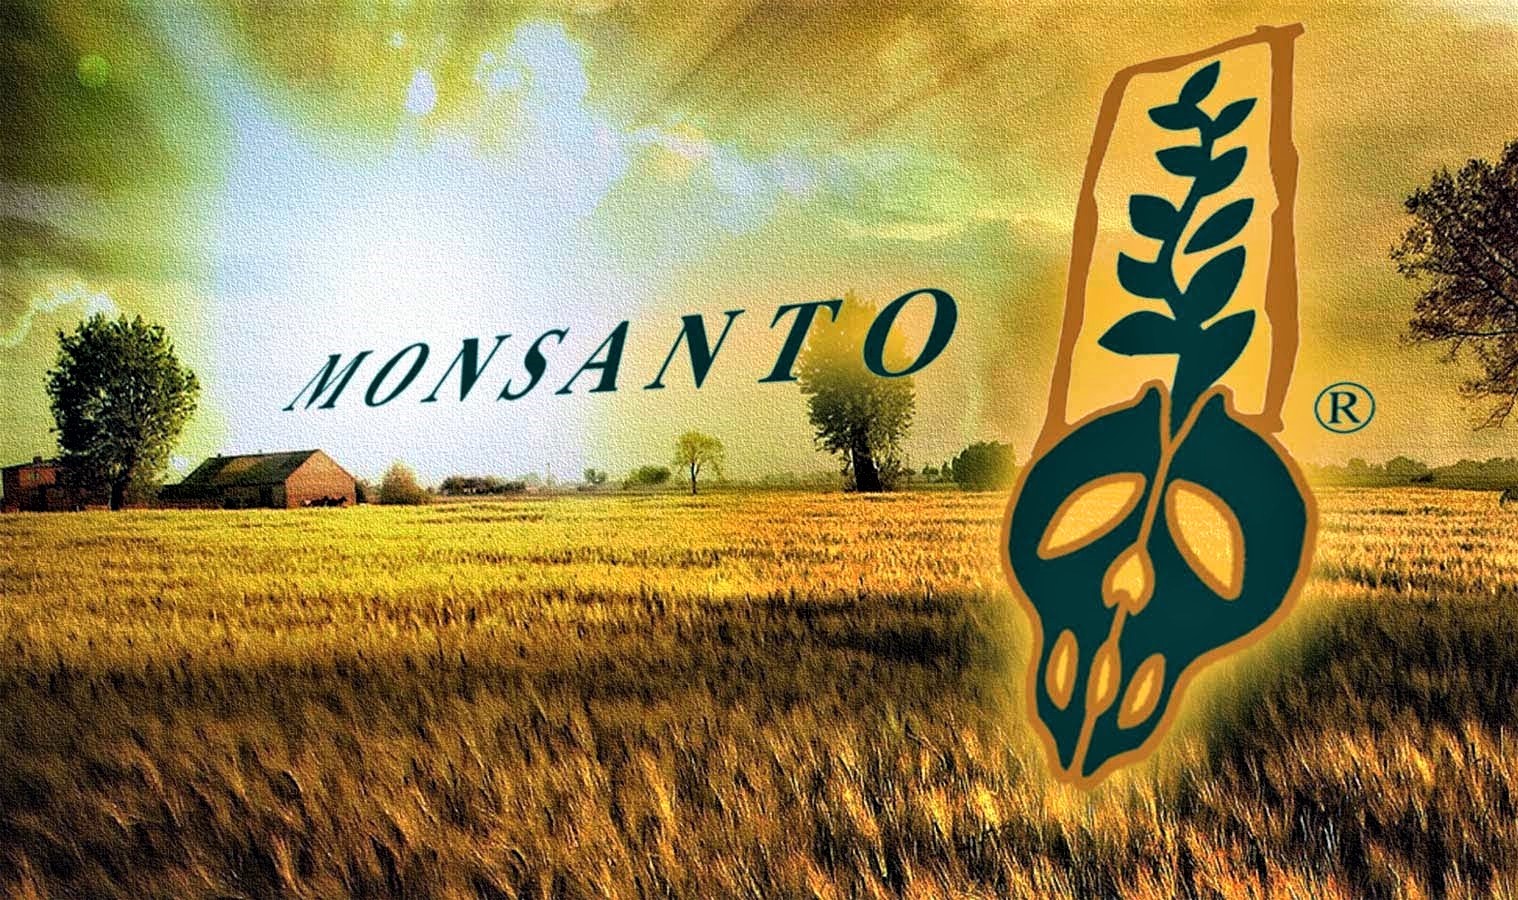 Lista de alimentos, marcas y productos cancerígenos de Monsanto